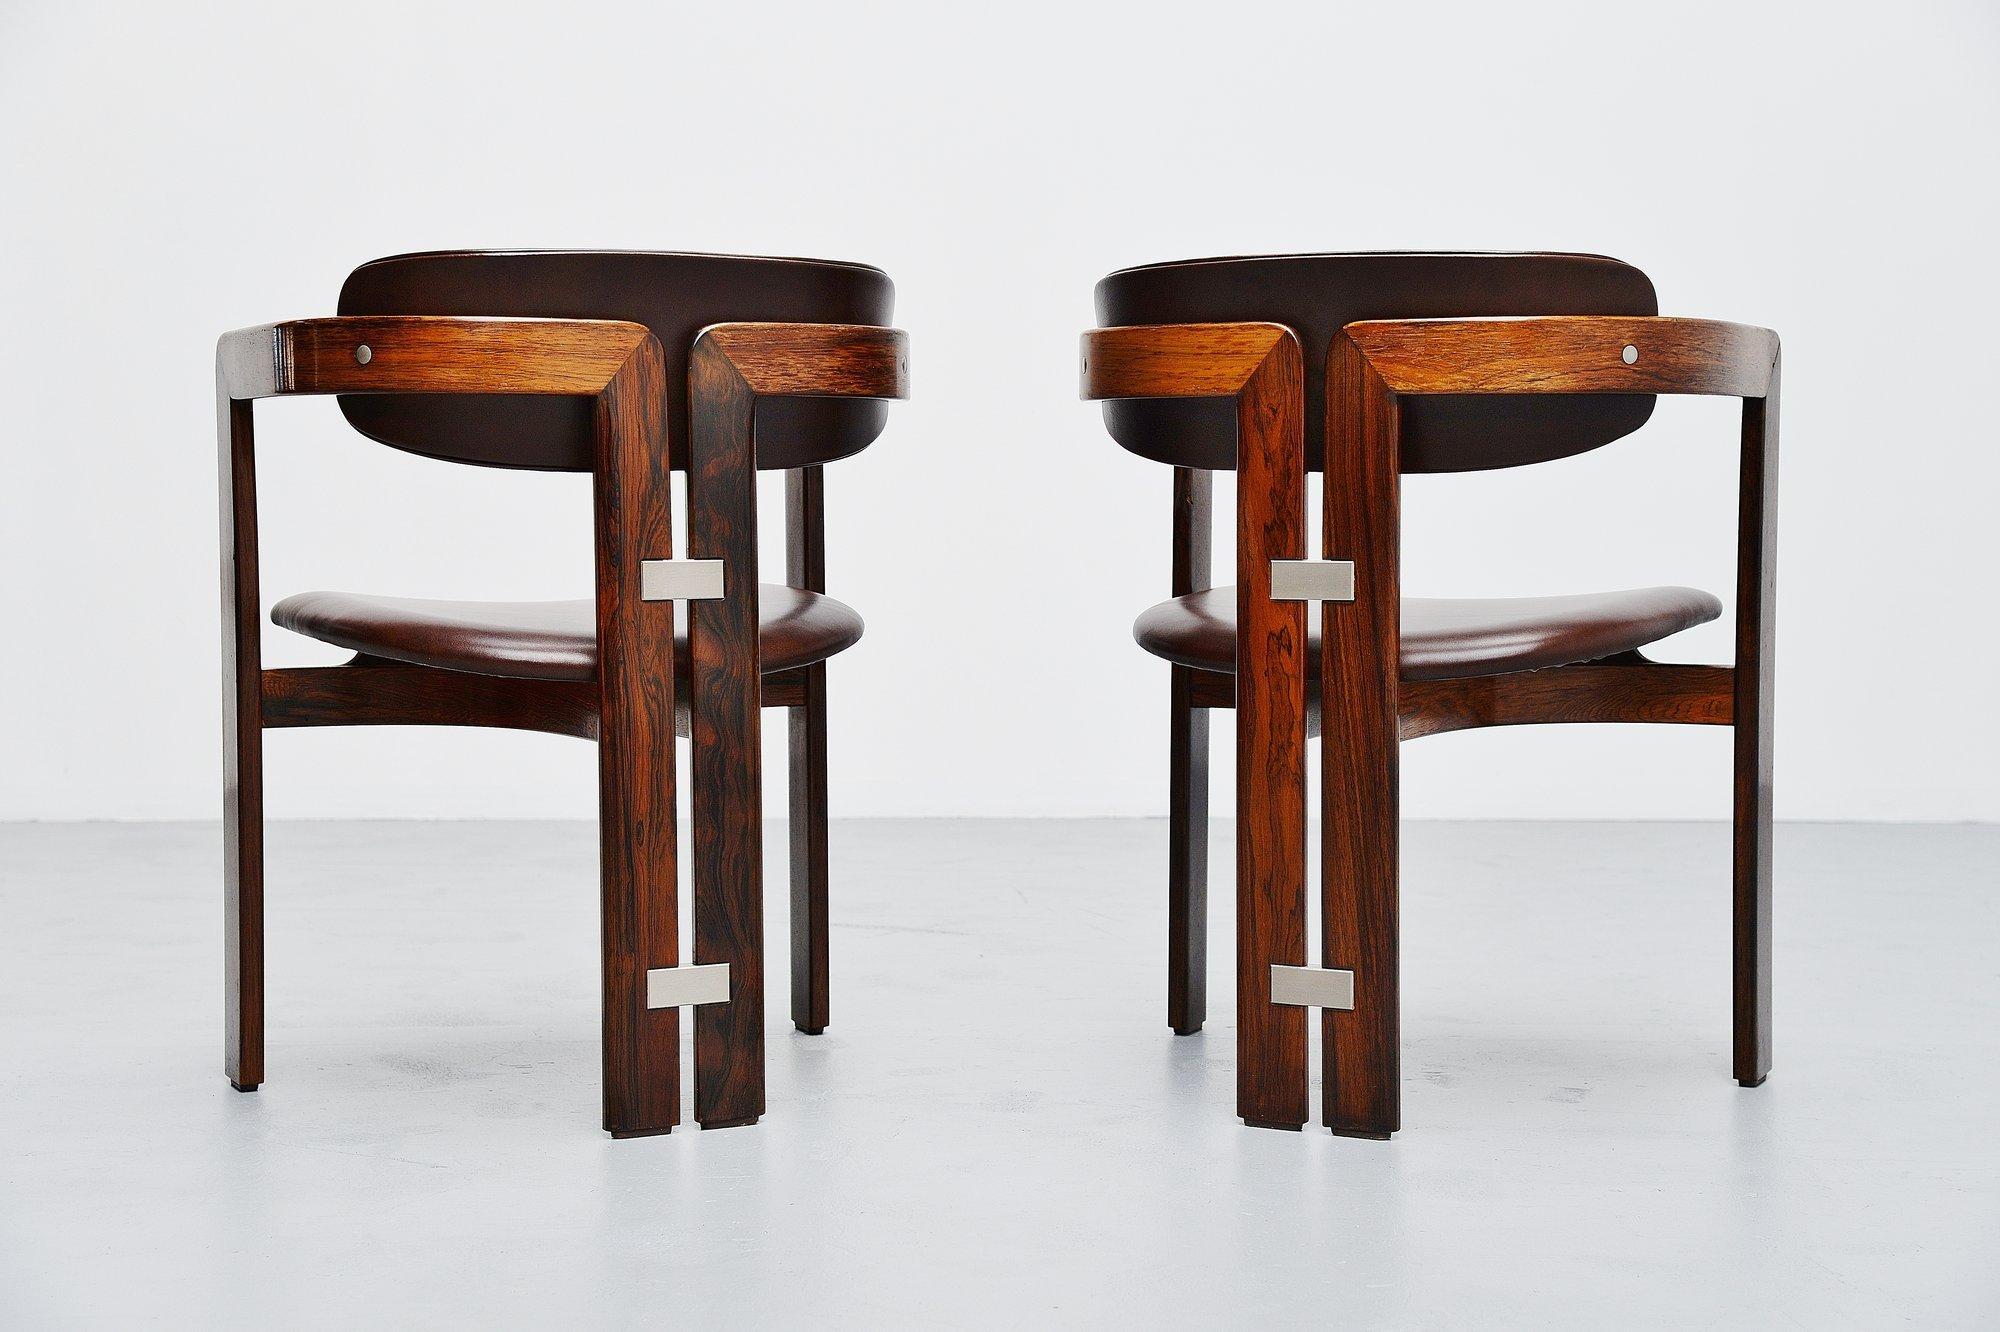 Étonnante paire de fauteuils conçue par Augusto Savini et fabriquée par Pozzi:: Italie 1965. Ces cartes ont des cadres en bois de rose massif et des sièges et dos en cuir brun en excellent état. Des chaises de forme très agréable et des sièges